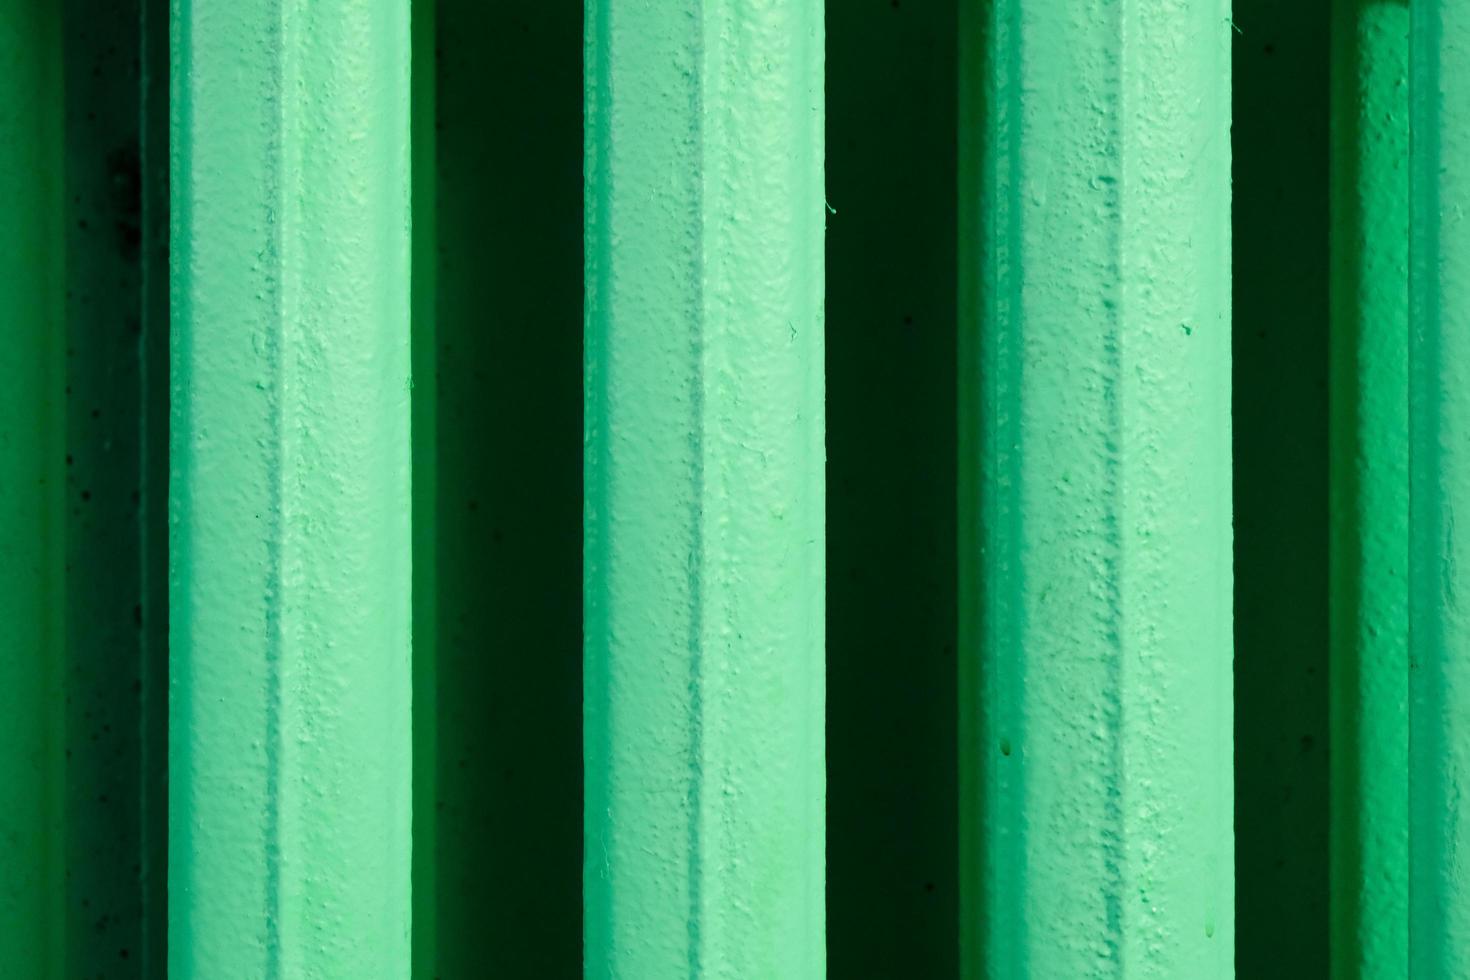 abstrakta vertikala ränder mönster från ett gammalt hemvärmebatteri tillverkat av gjutjärn och målat i grönt foto